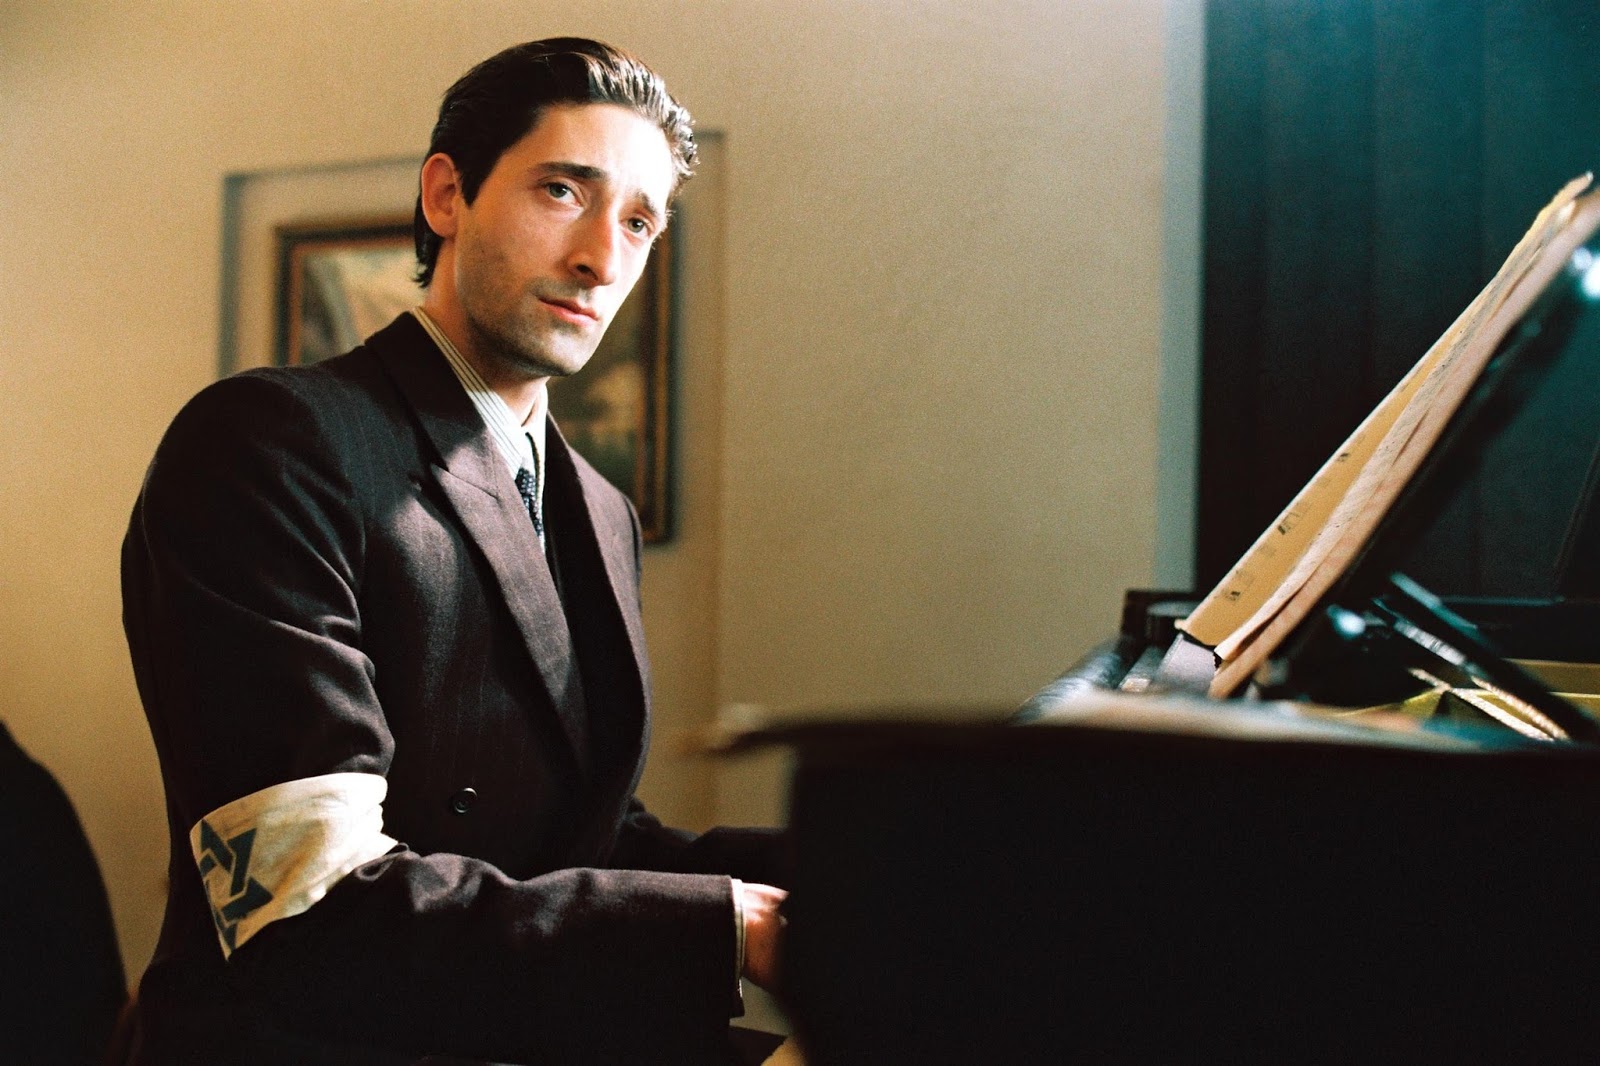 The Pianist filmine konu olan Wladyslaw Szpilman'ın gerçek hayatı